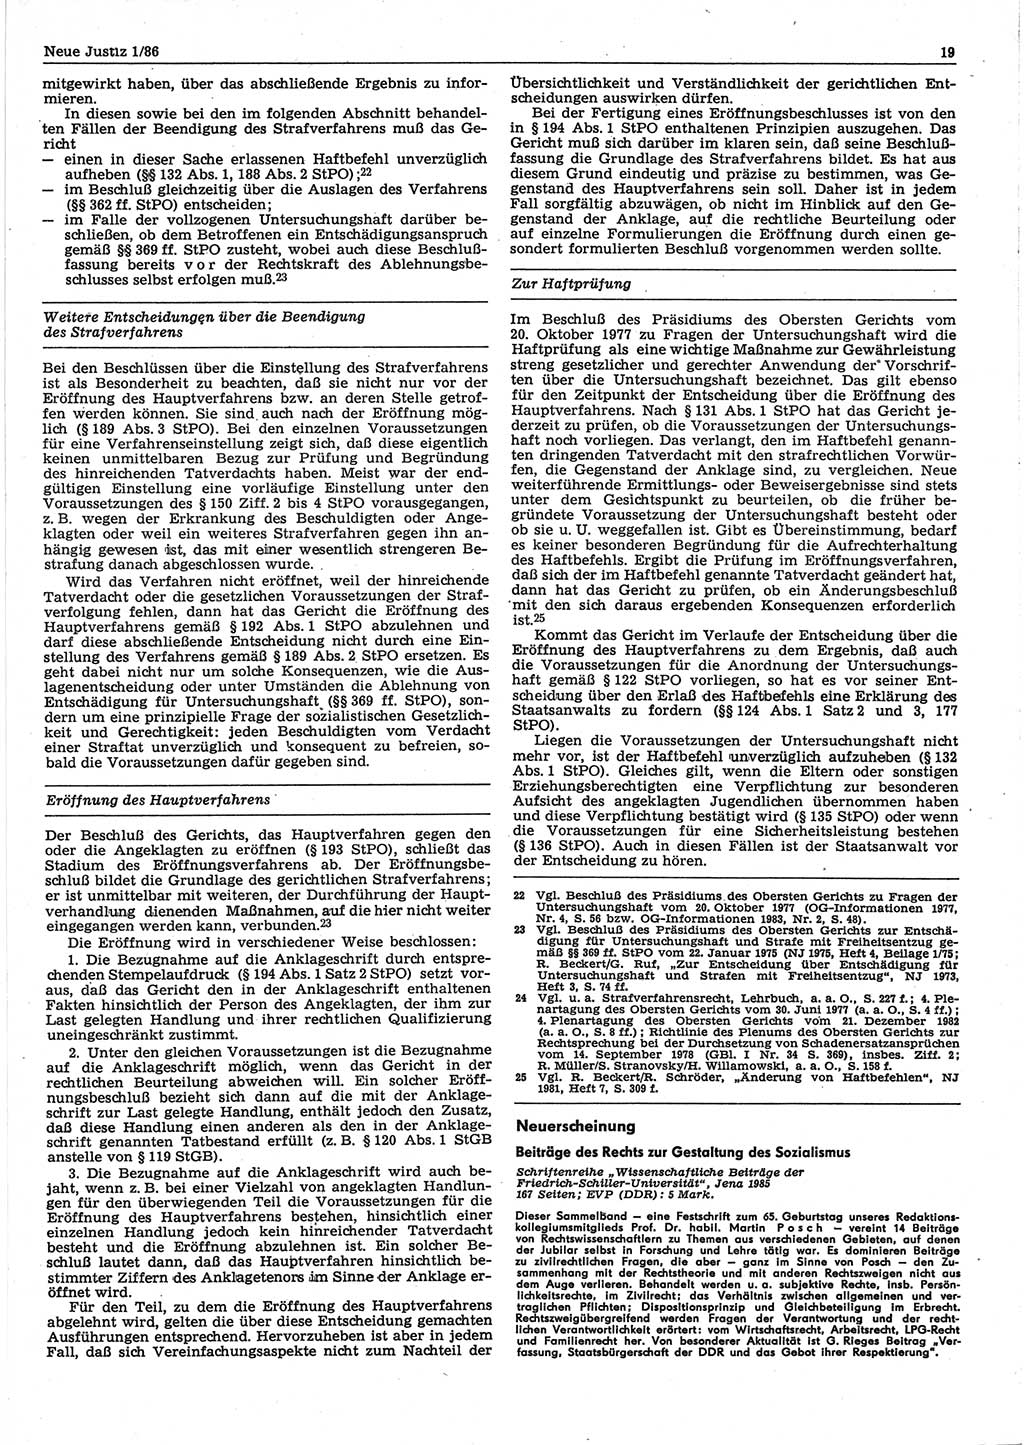 Neue Justiz (NJ), Zeitschrift für sozialistisches Recht und Gesetzlichkeit [Deutsche Demokratische Republik (DDR)], 40. Jahrgang 1986, Seite 19 (NJ DDR 1986, S. 19)